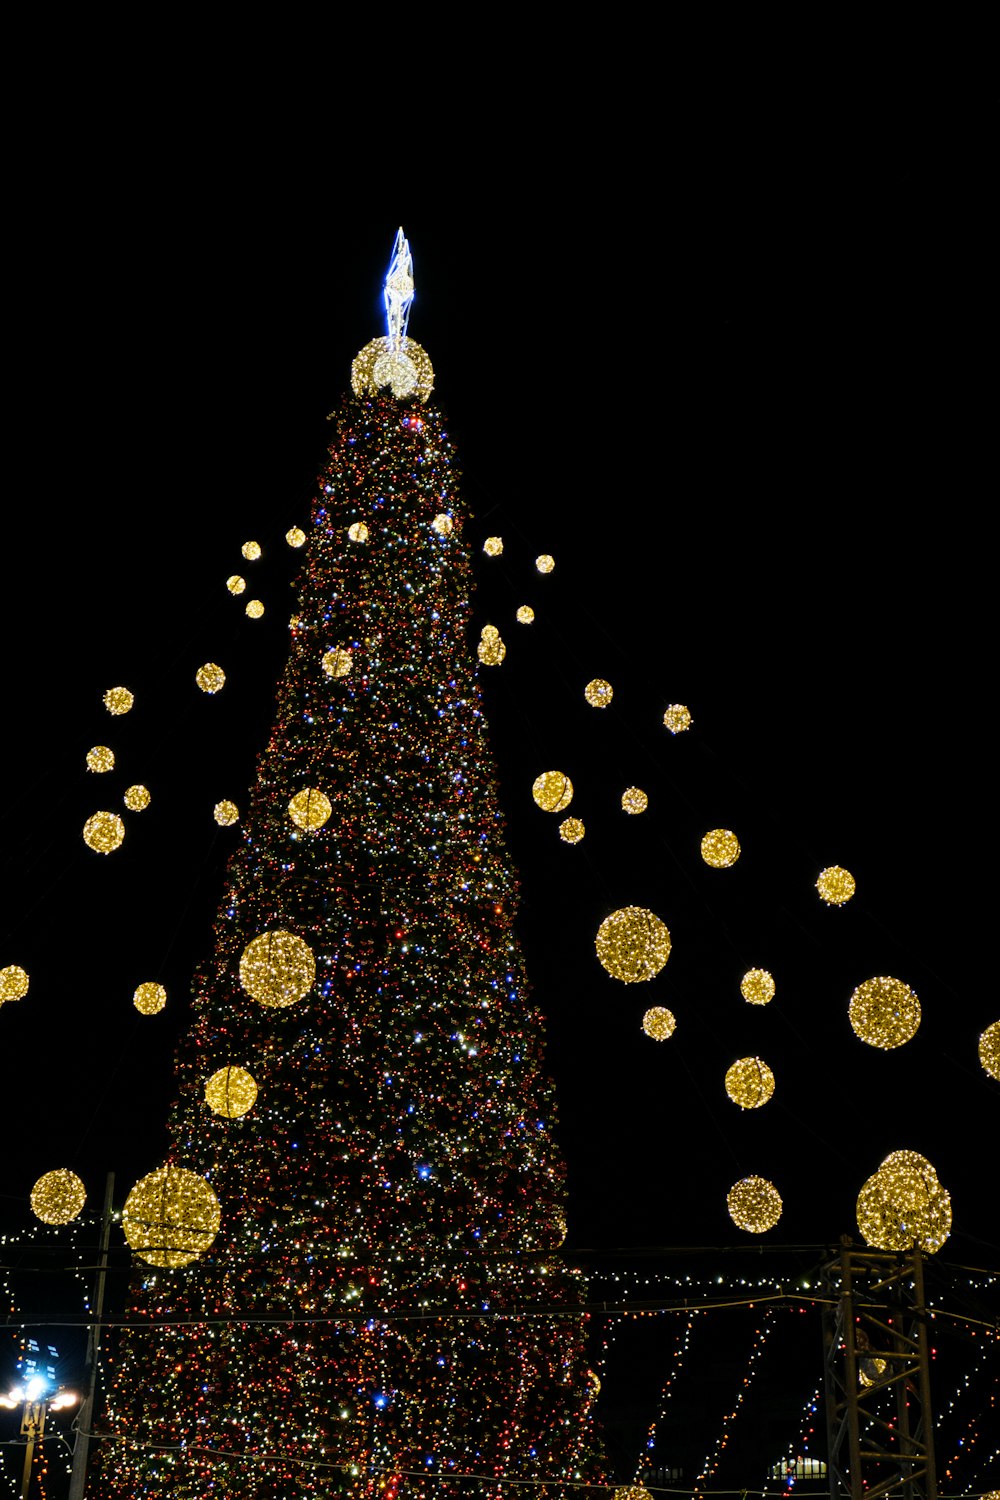 Ein großer Weihnachtsbaum wird nachts beleuchtet